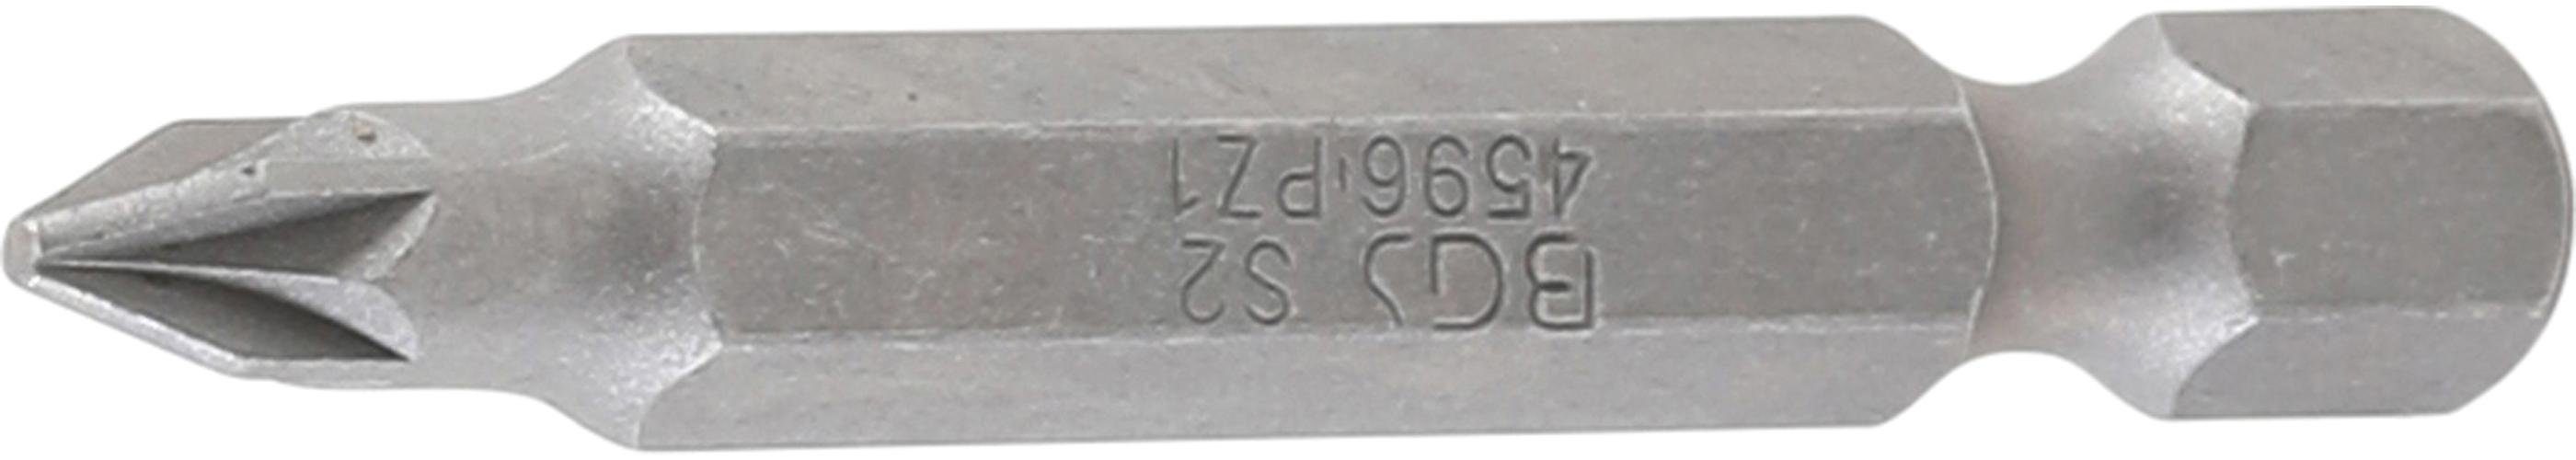 BGS technic Bit-Schraubendreher Bit, Länge 50 mm, Antrieb Außensechskant 6,3 mm (1/4), Kreuzschlitz PZ1